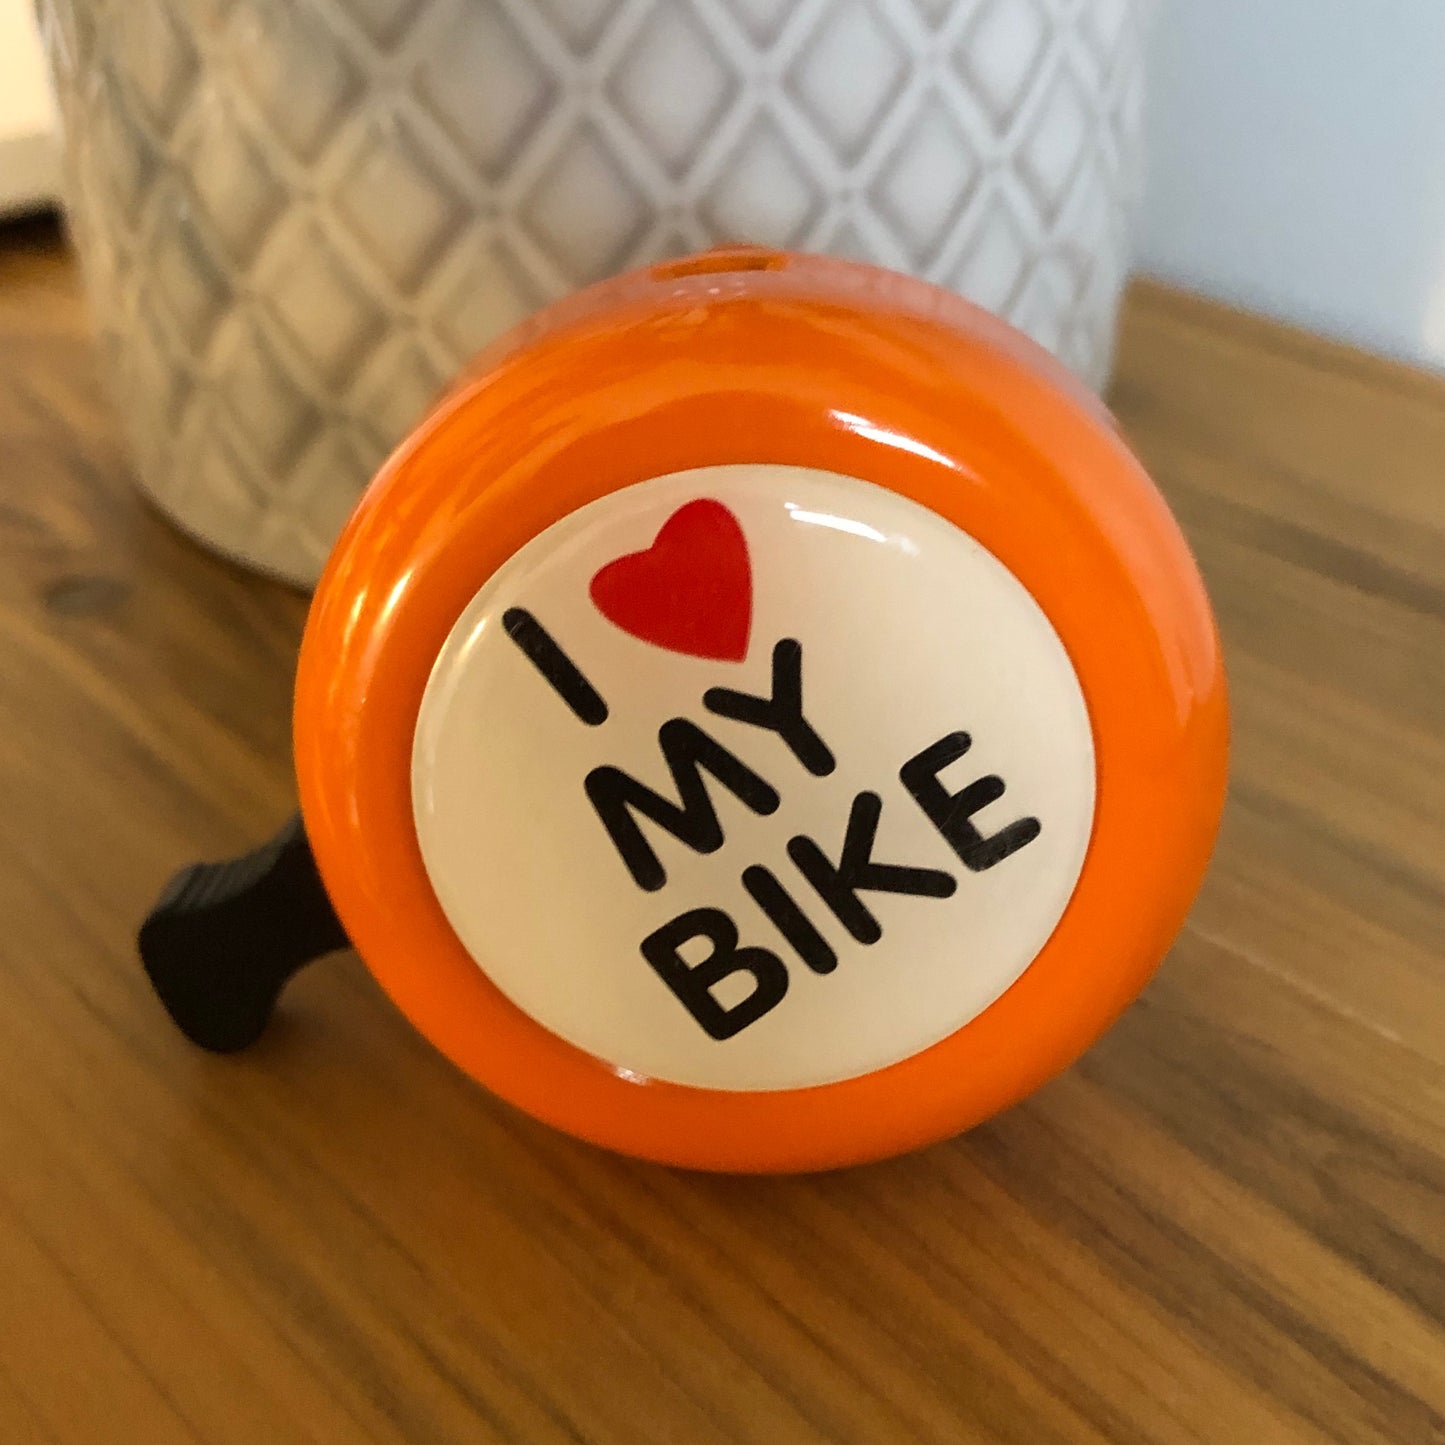 I "Heart" my Bike! Bicycle Bell